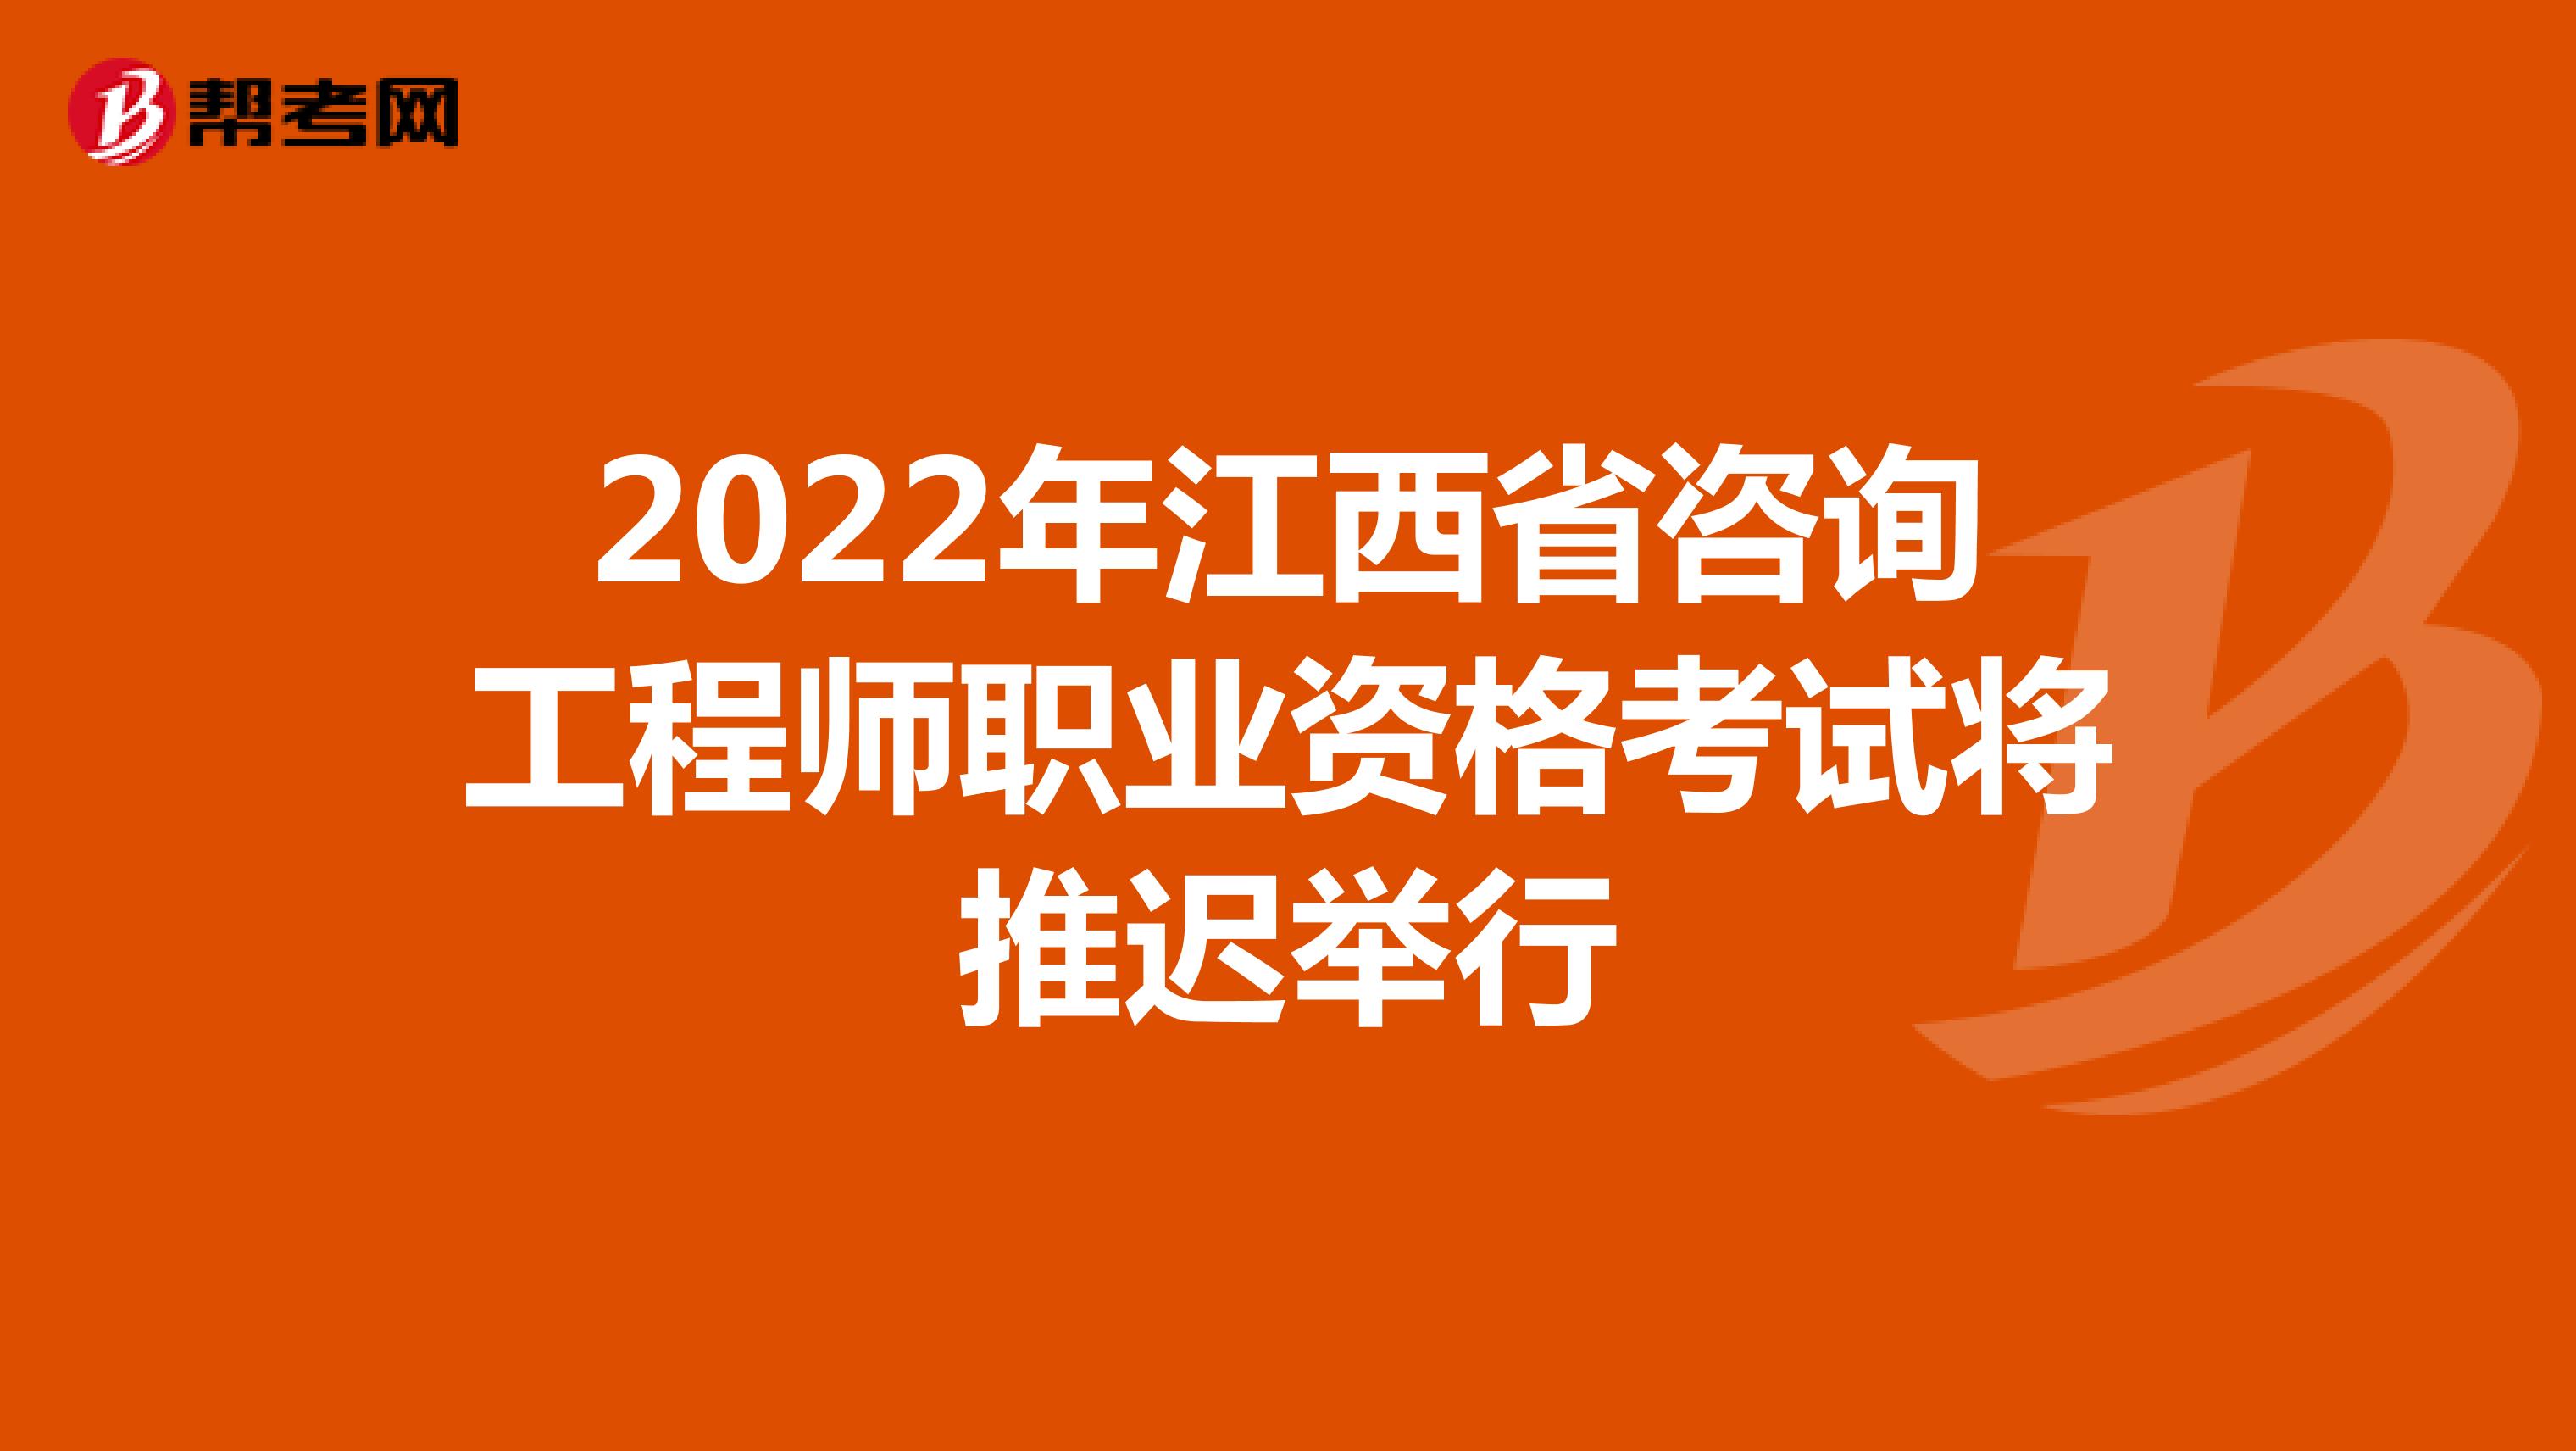 2022年江西省咨询工程师职业资格考试将推迟举行